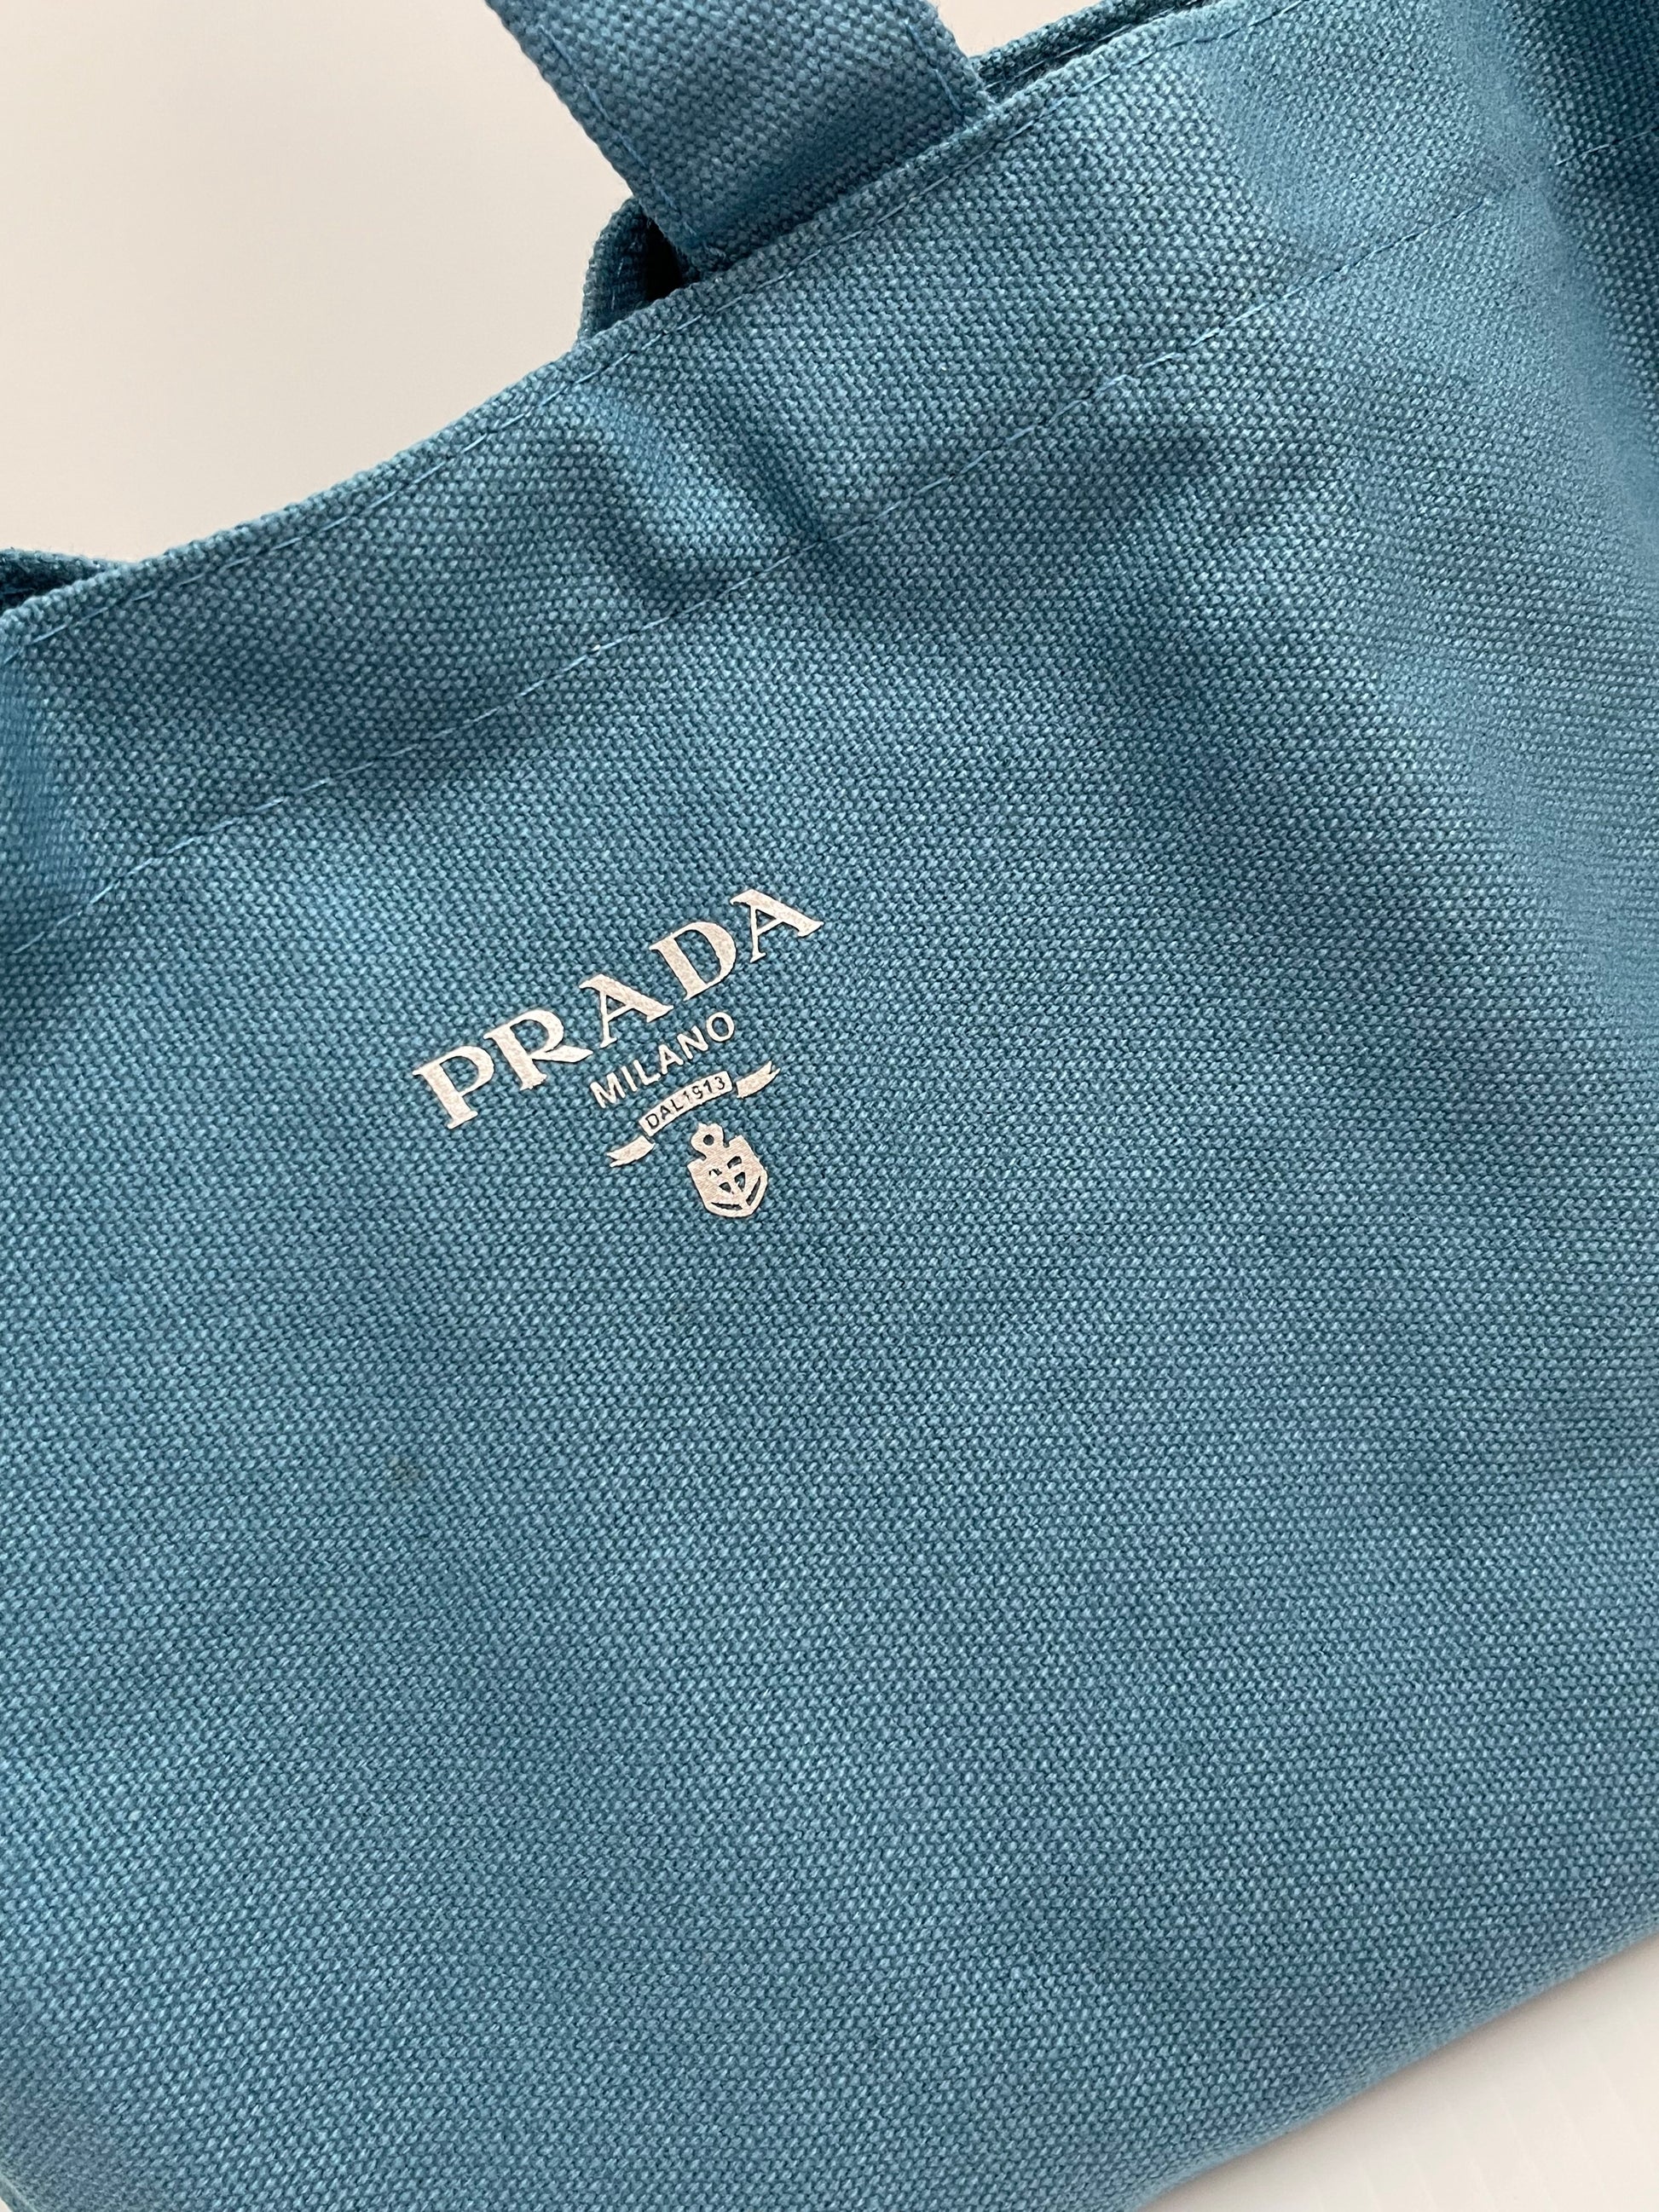 Prada Foldable Shopper Tote Bag in Black